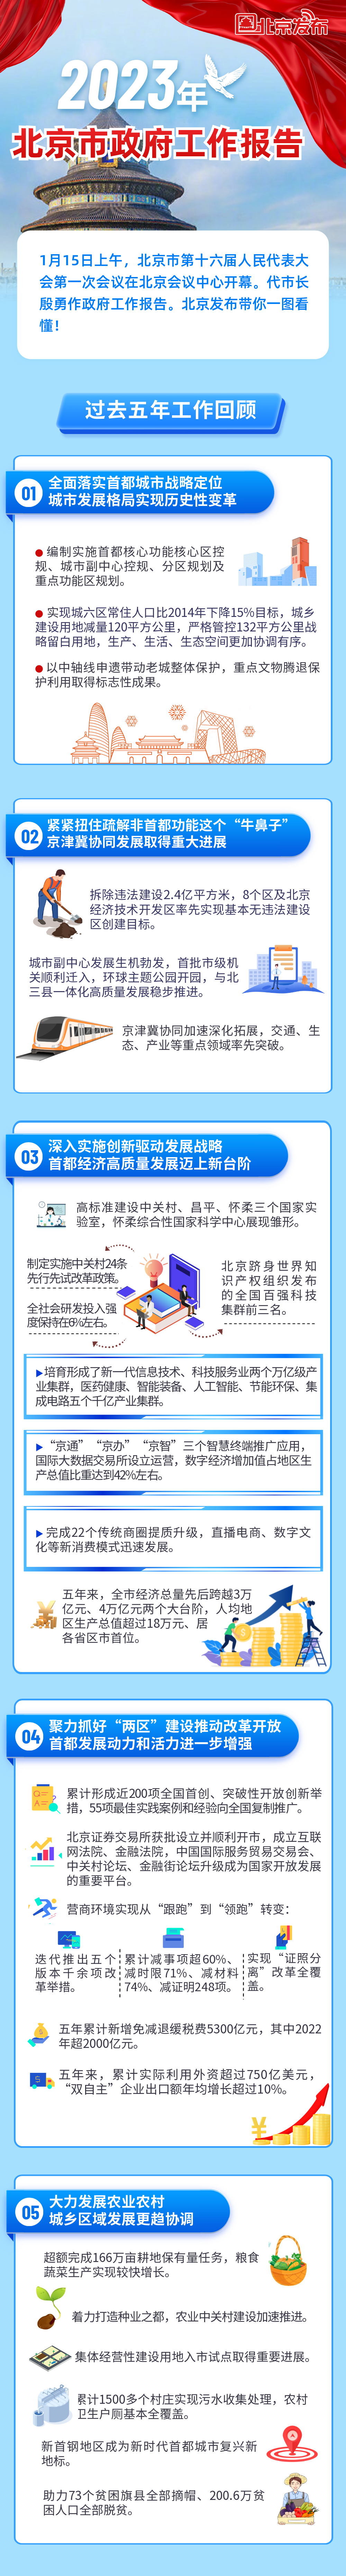 一图读懂2023年北京市政府工作报告